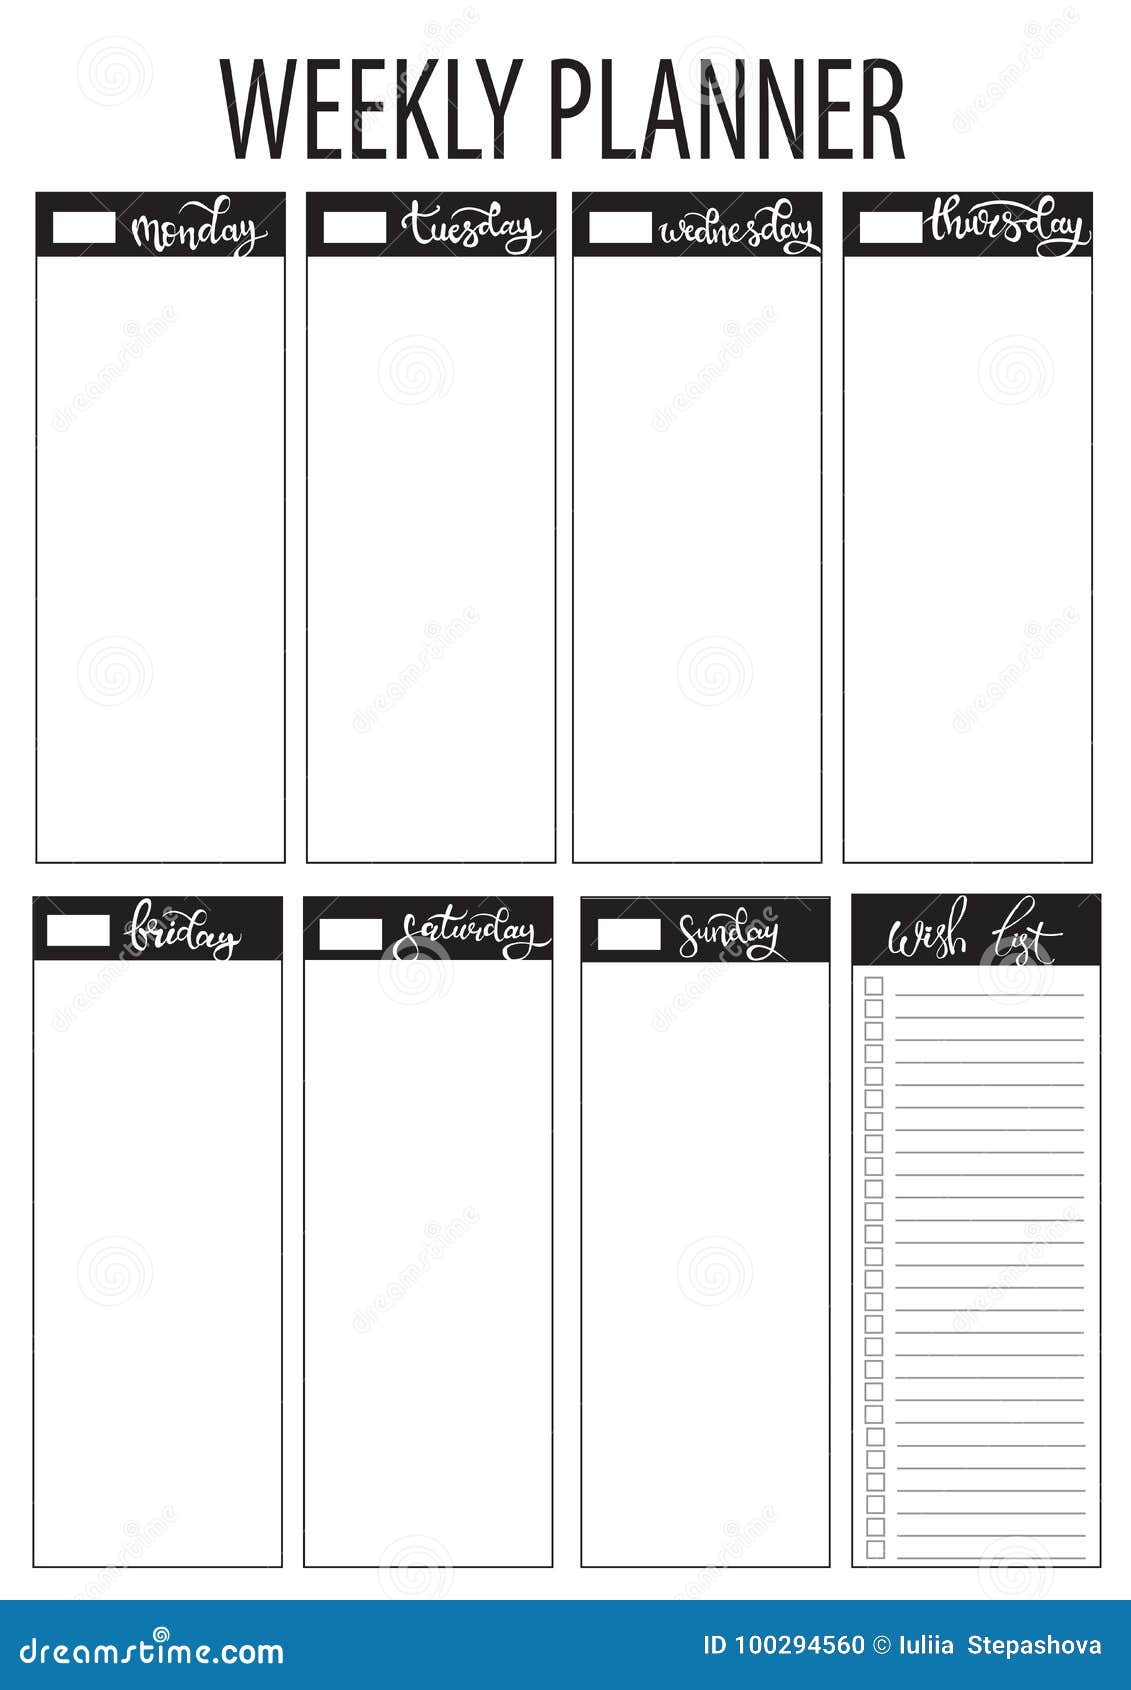 weekly planner blank template